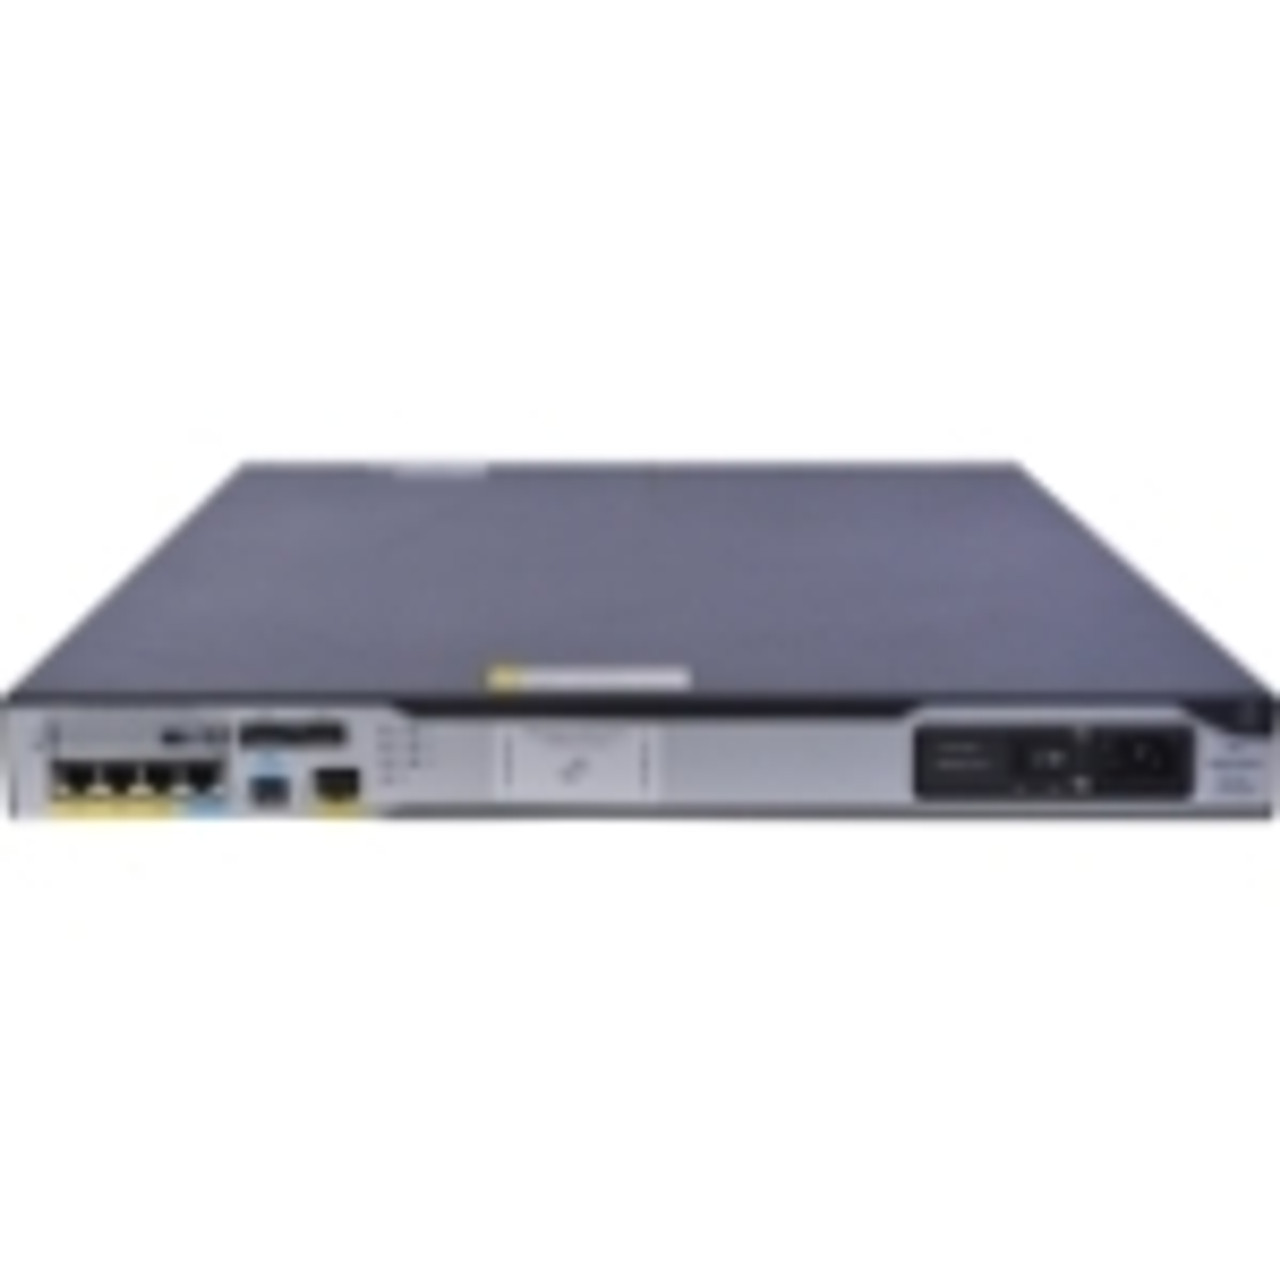 JG408A HP MSR3024 PoE Router 3 Ports Management Port PoE Ports 8 Slots Gigabit Ethernet 1U Rack-mountable, Desktop (Refurbished)